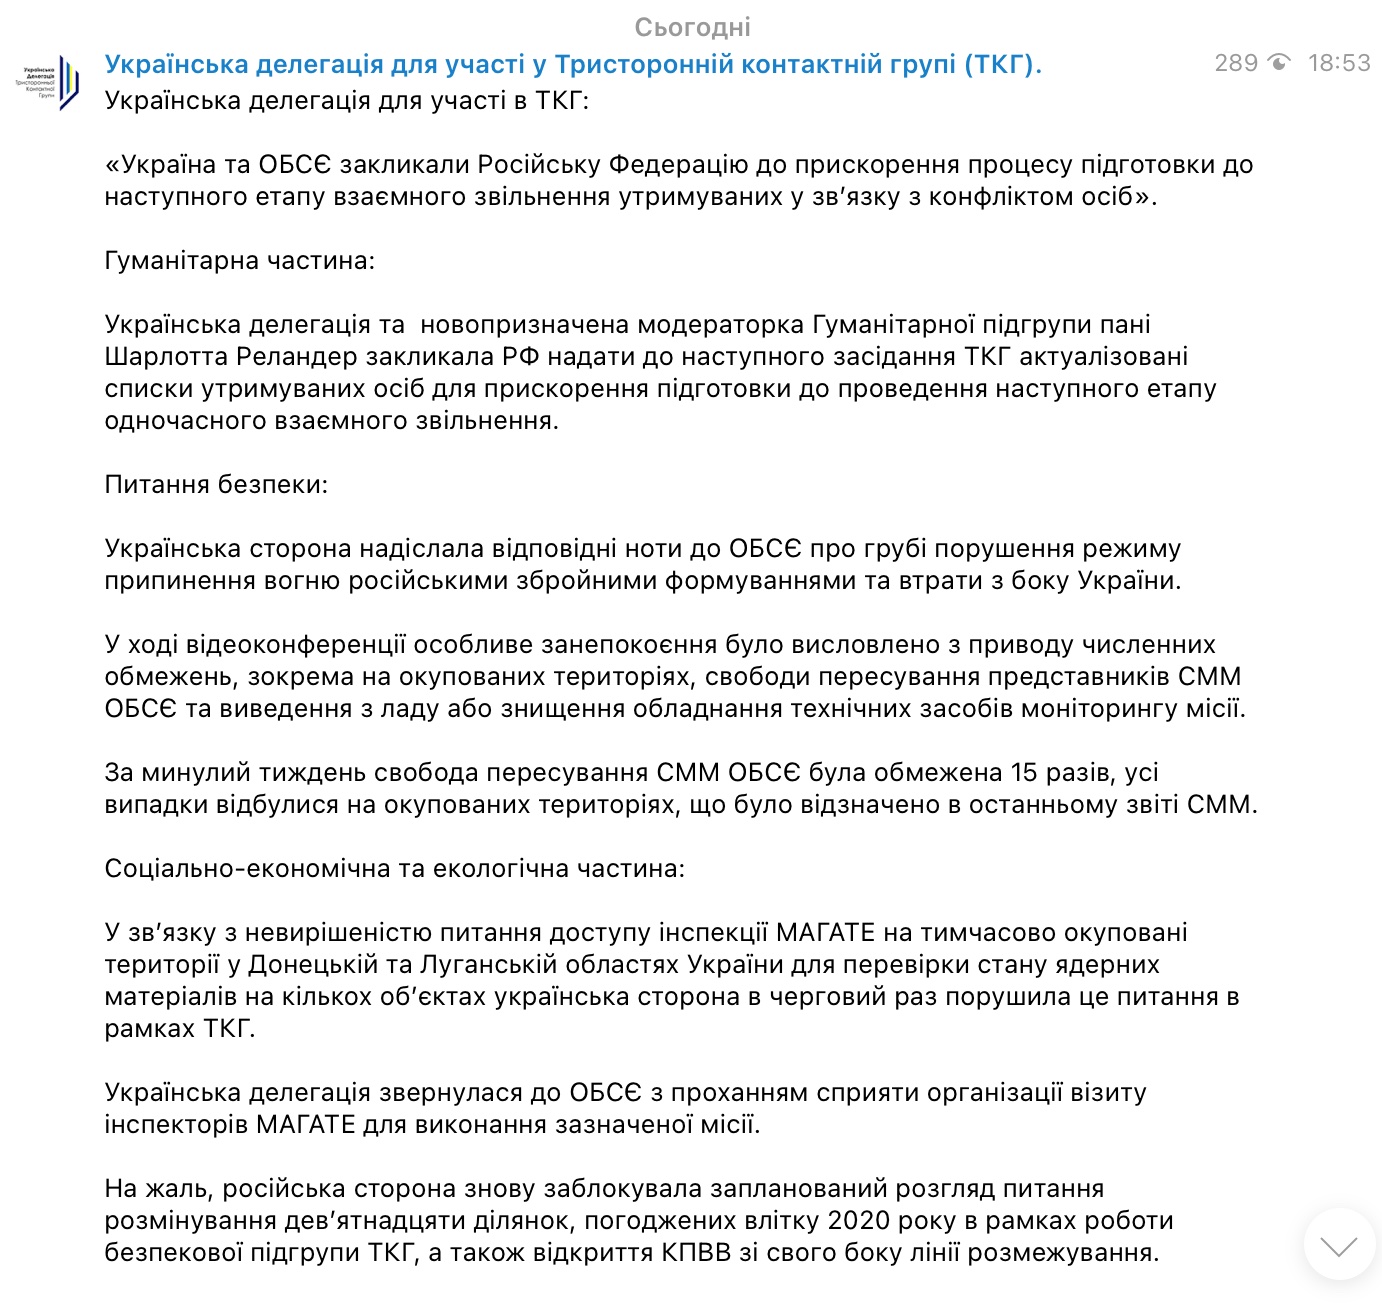 Переговоры по Донбассу. Россию призвали актуализировать списки на обмен пленными